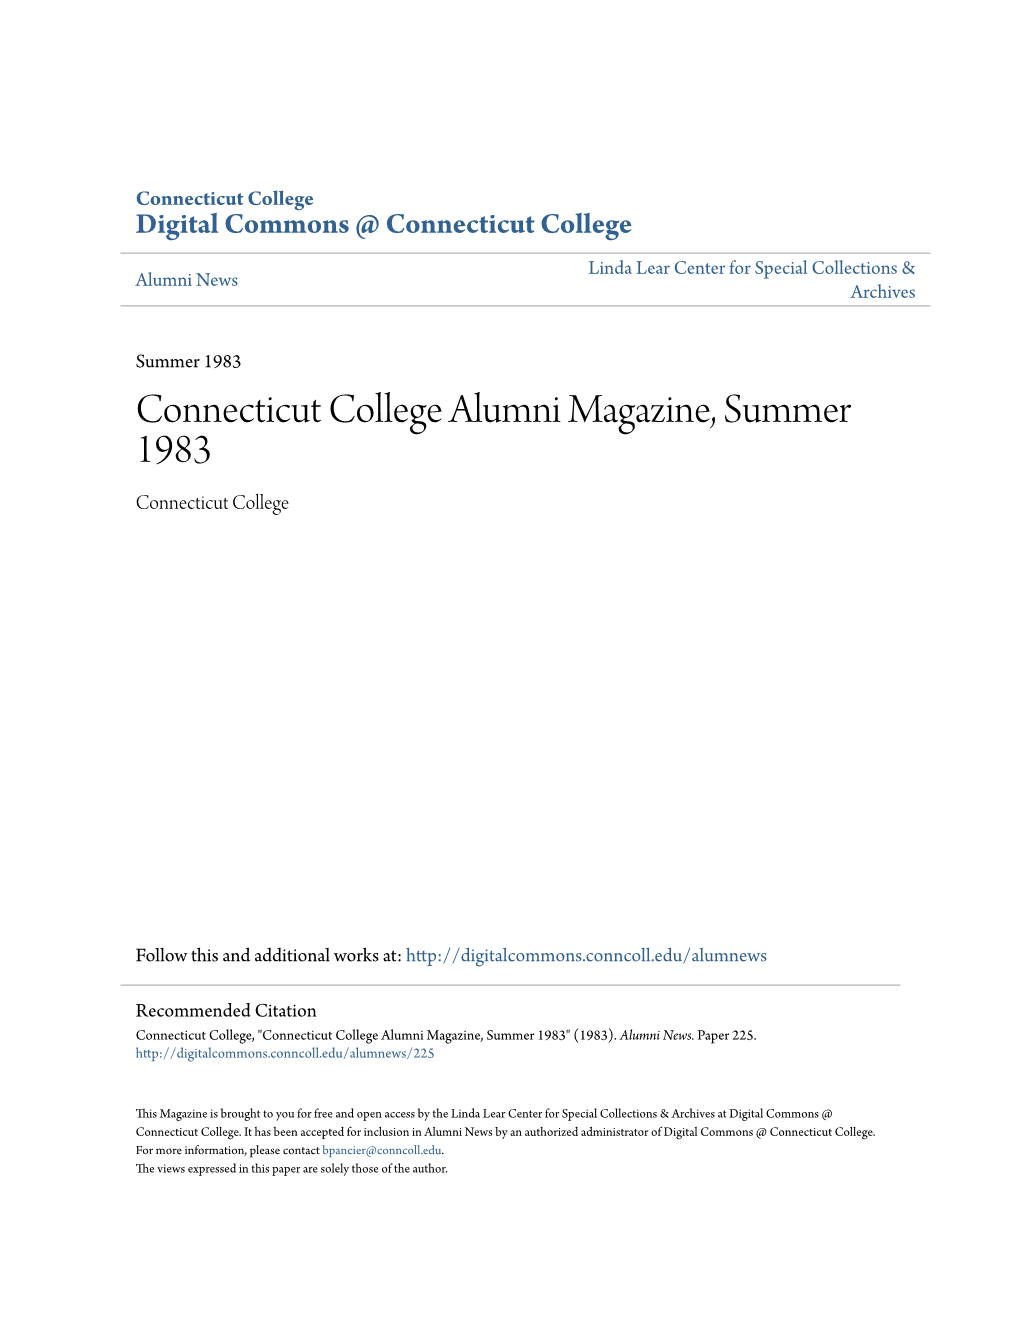 Connecticut College Alumni Magazine, Summer 1983 Connecticut College